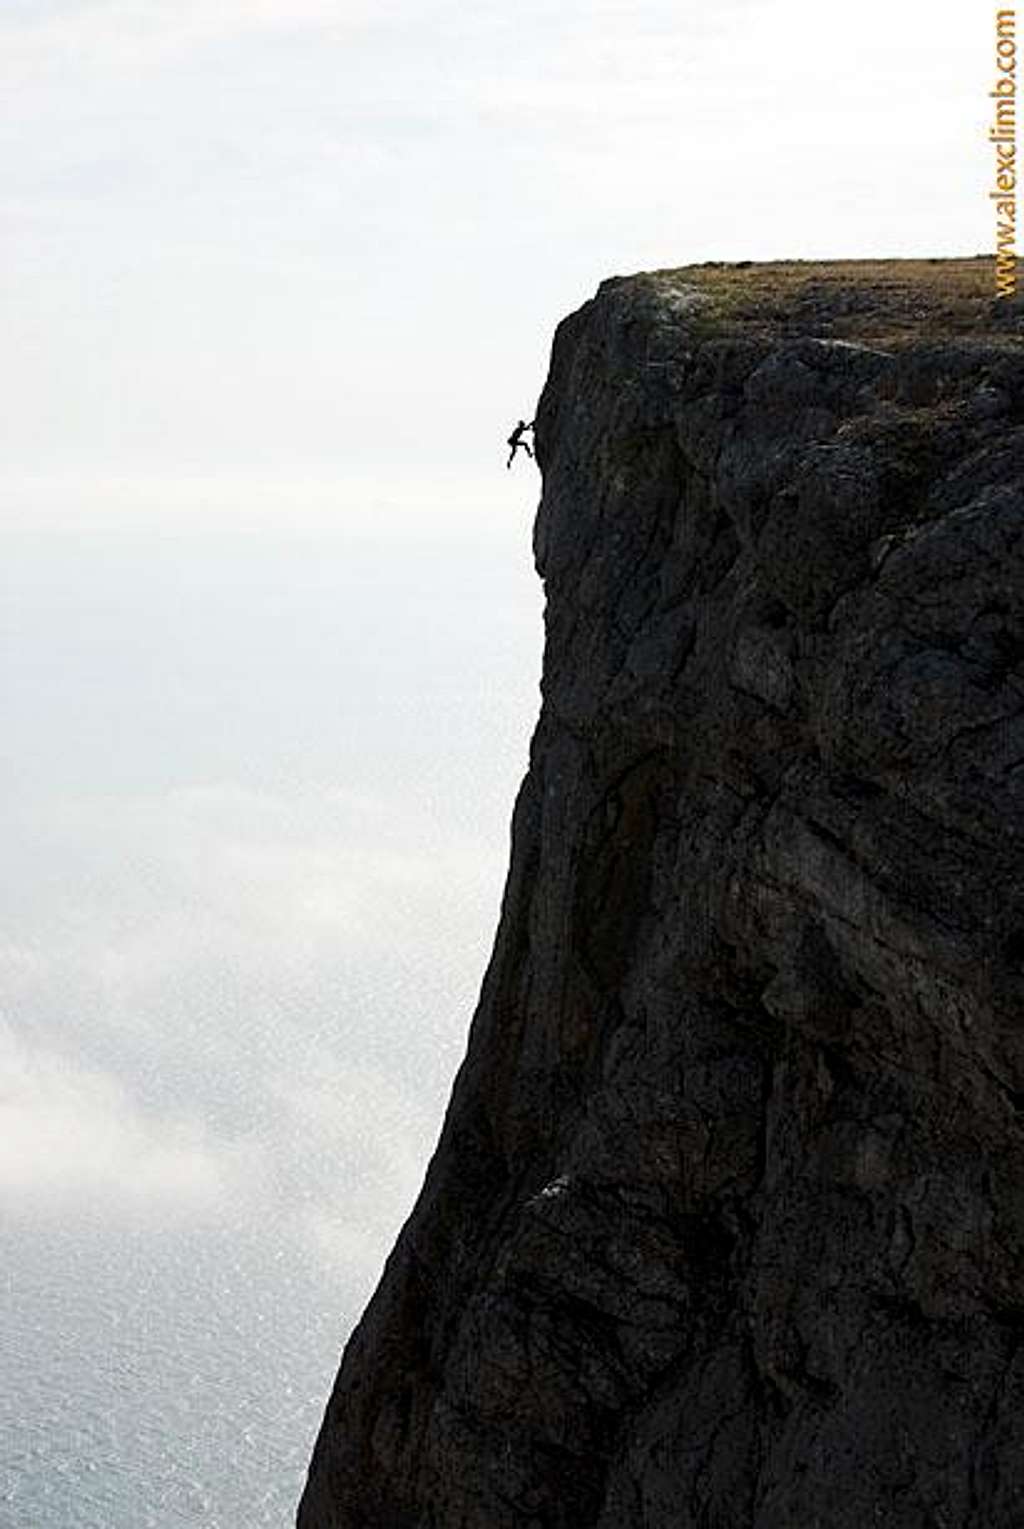 Rockclimbing in Crimea